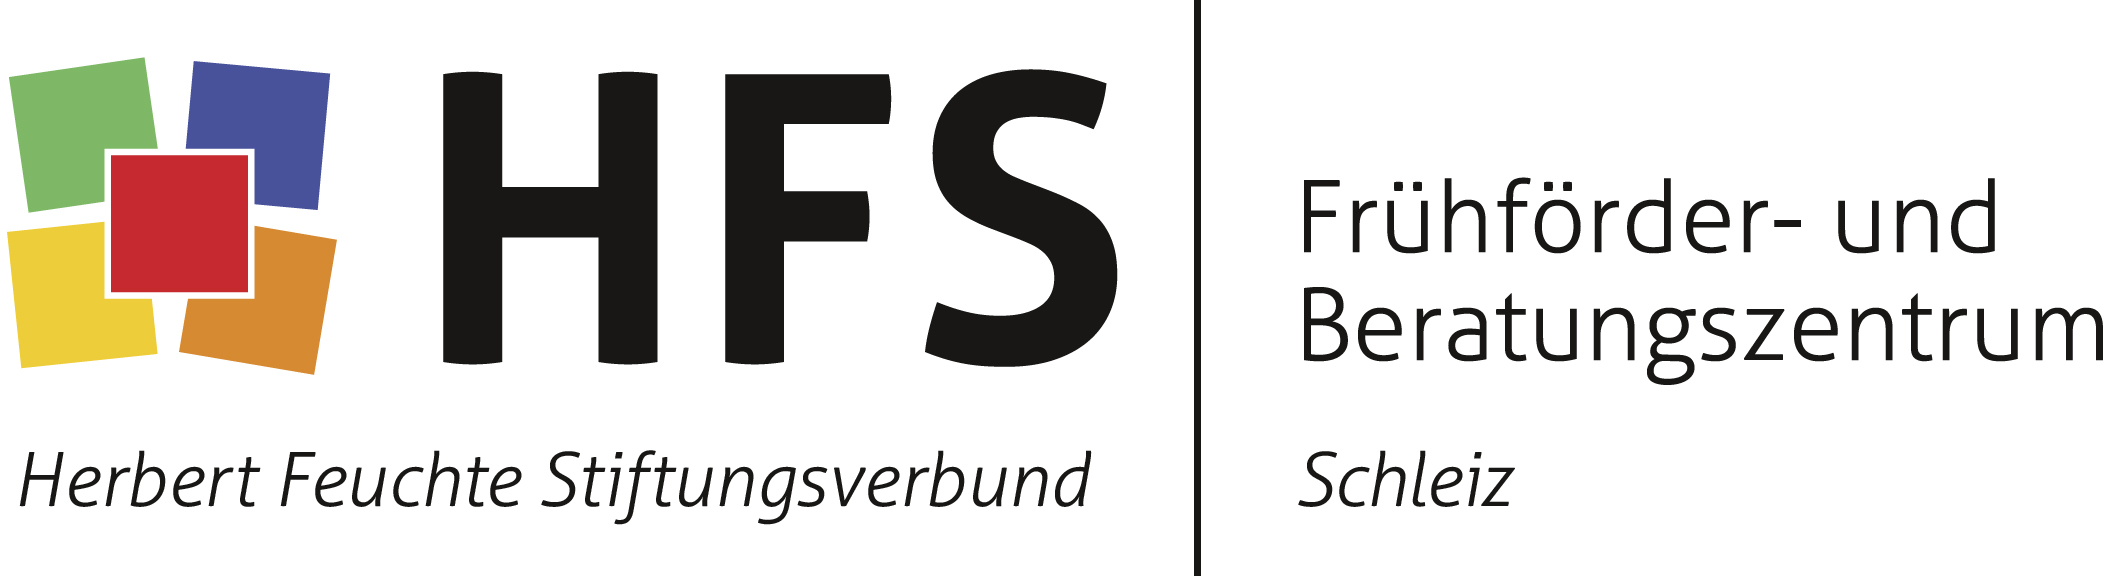 Herbert Feuchte Stiftungsverbund gemeinnützige GmbH